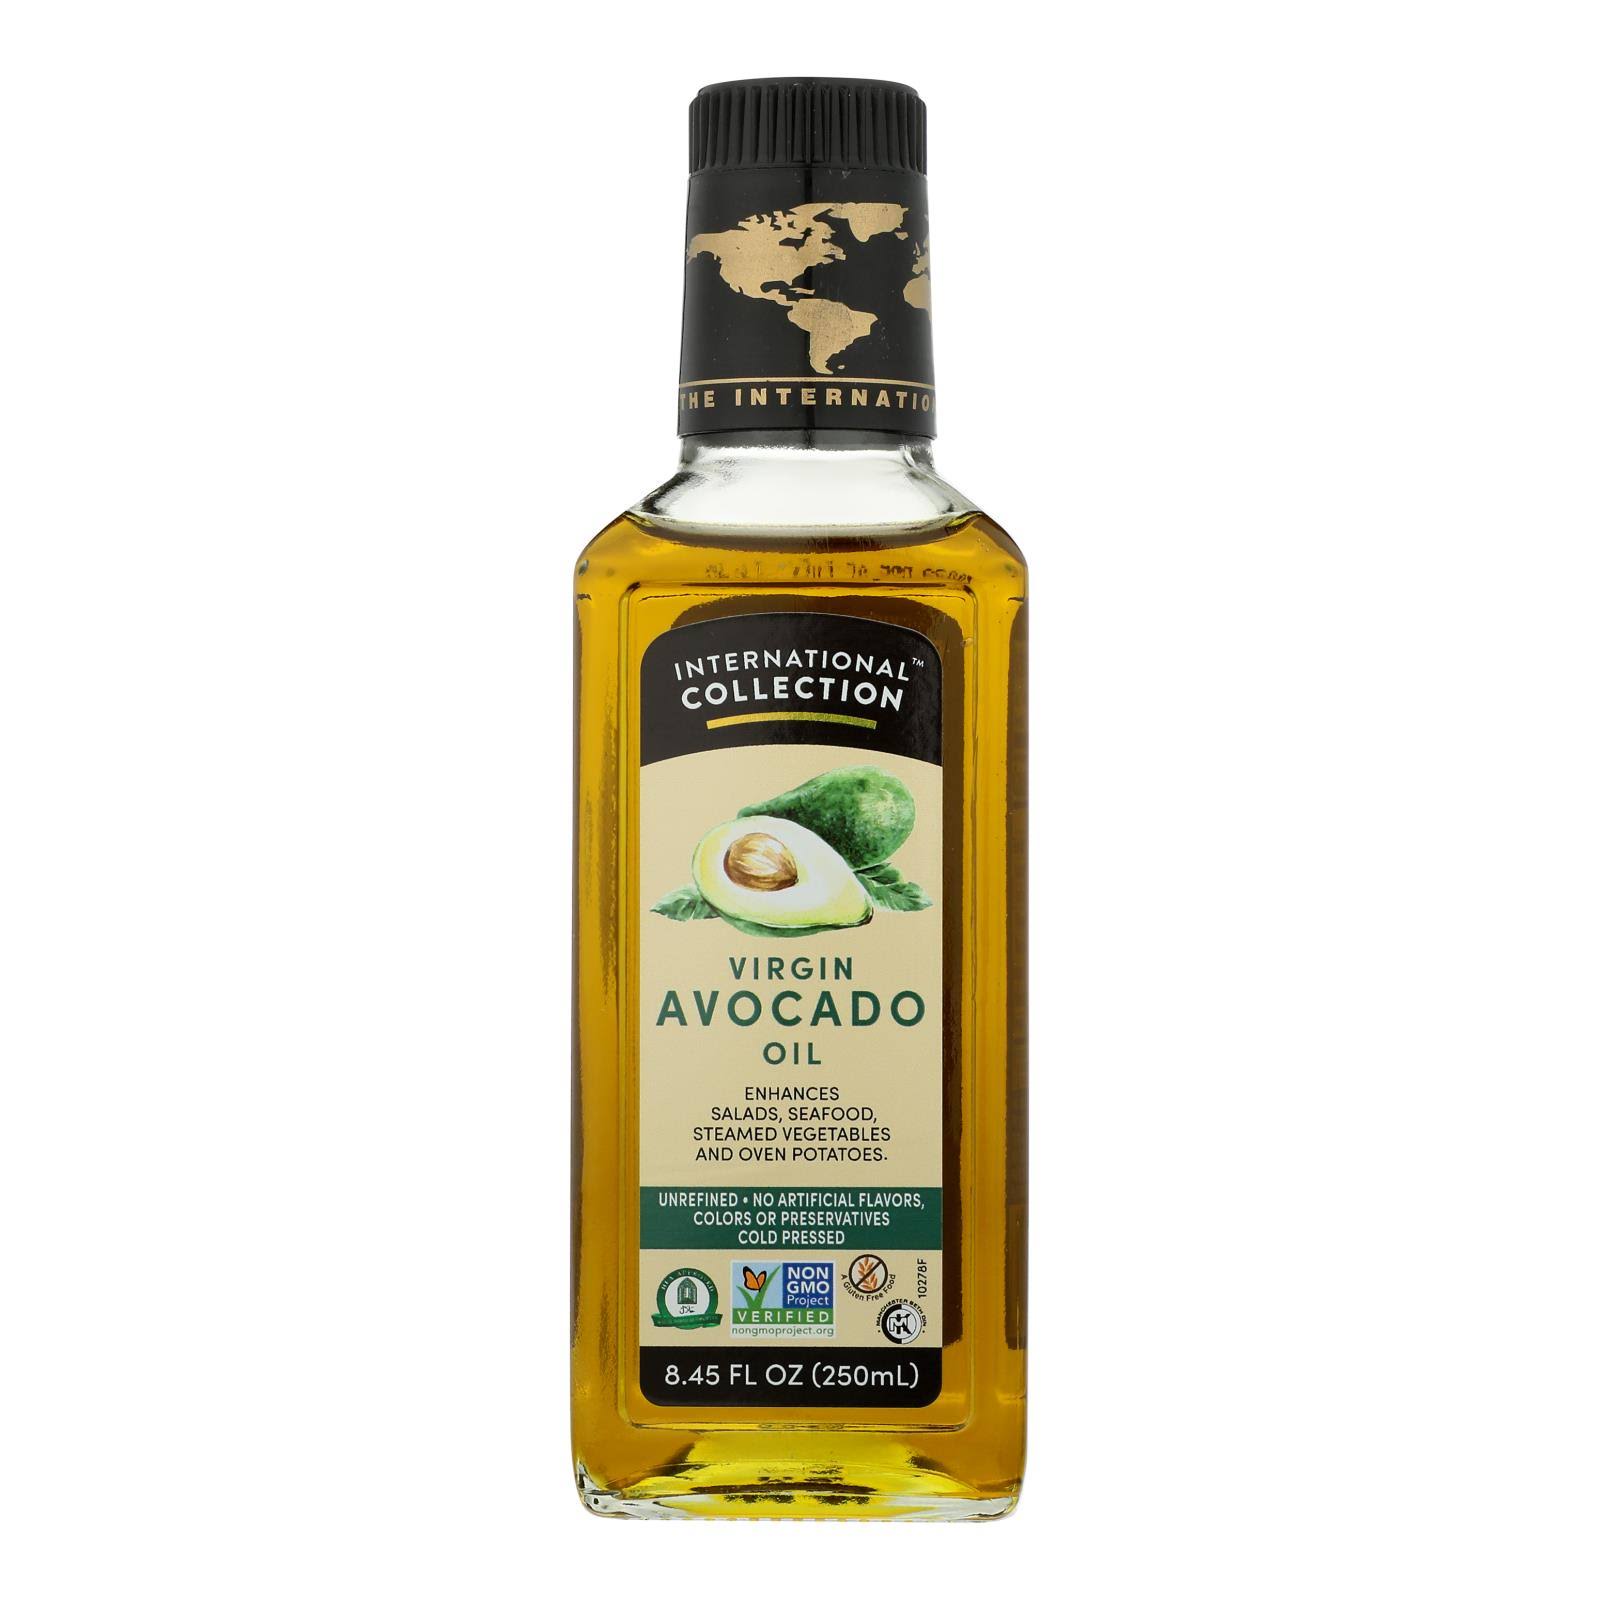 International Collection Avocado Oil - Virgin - Case of 6 - 8.45 fl oz.